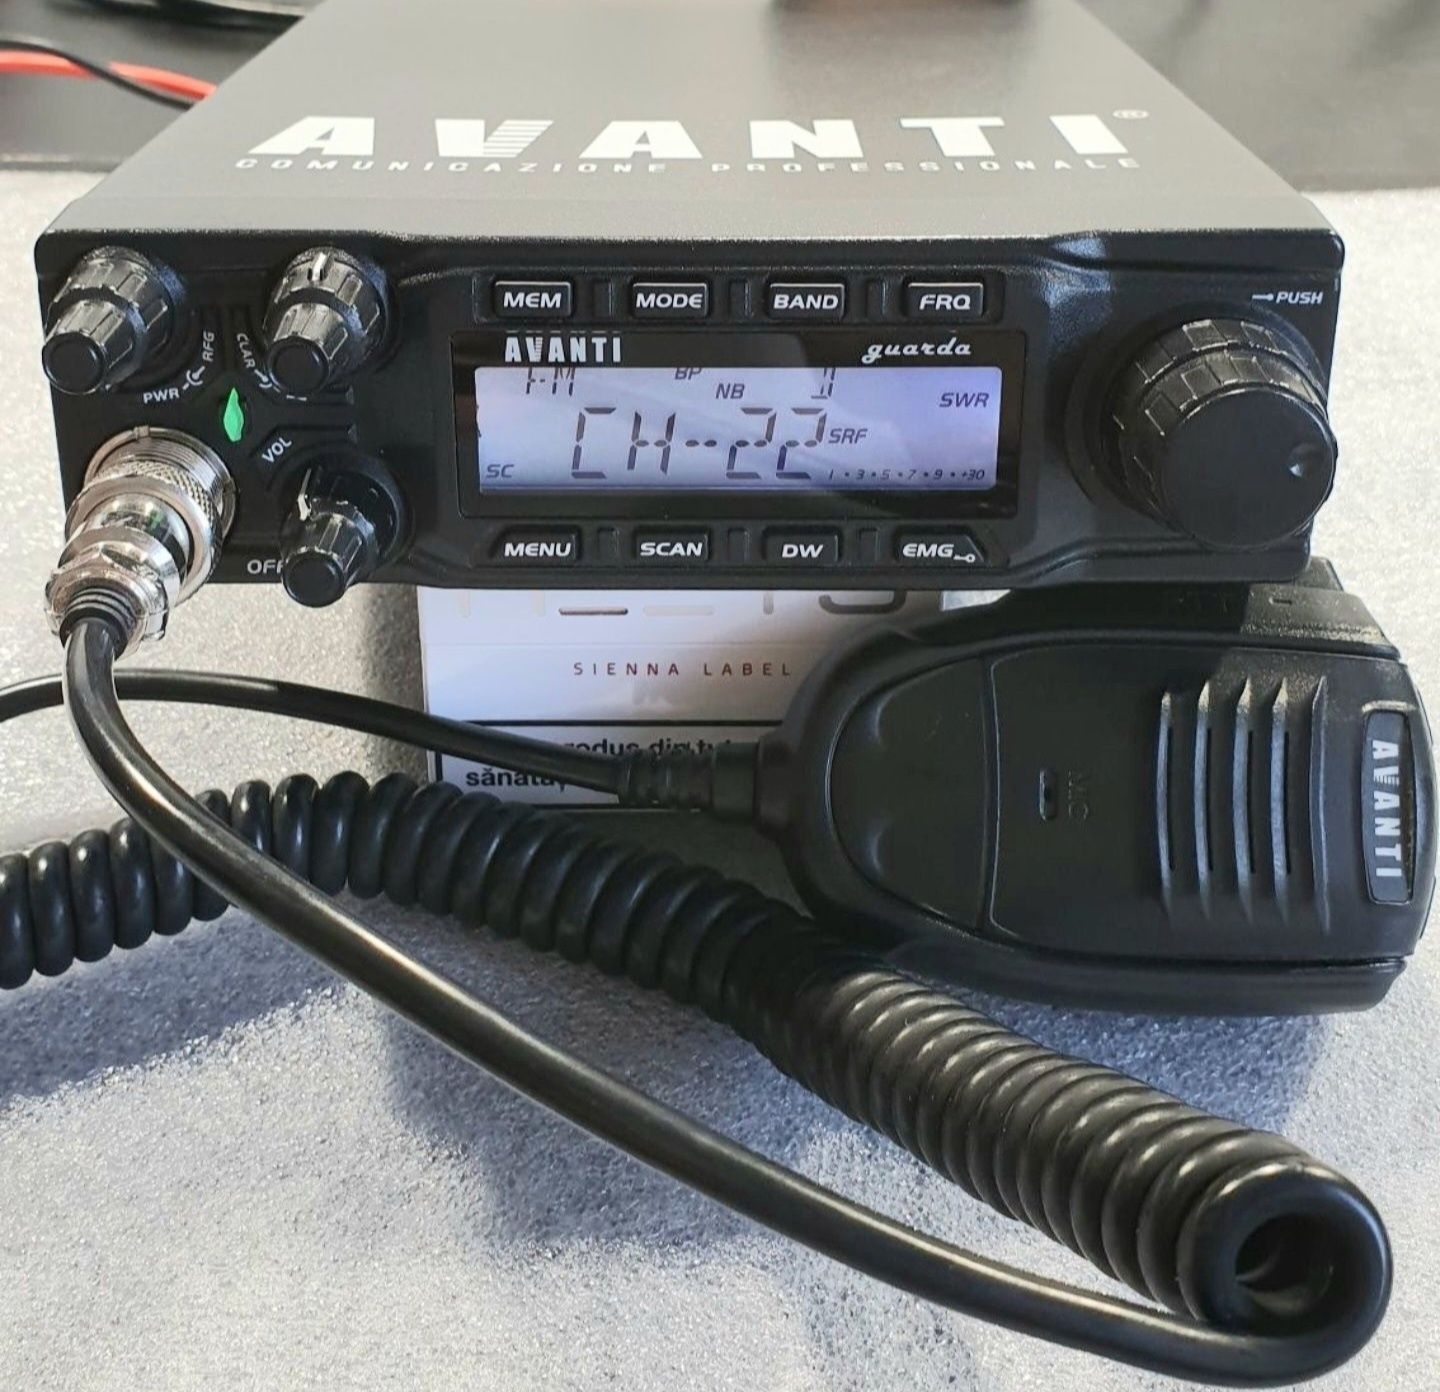 Statie radio CB - Avanti GUARDA/CRT SS9900 (4-135W)* noua/garantie